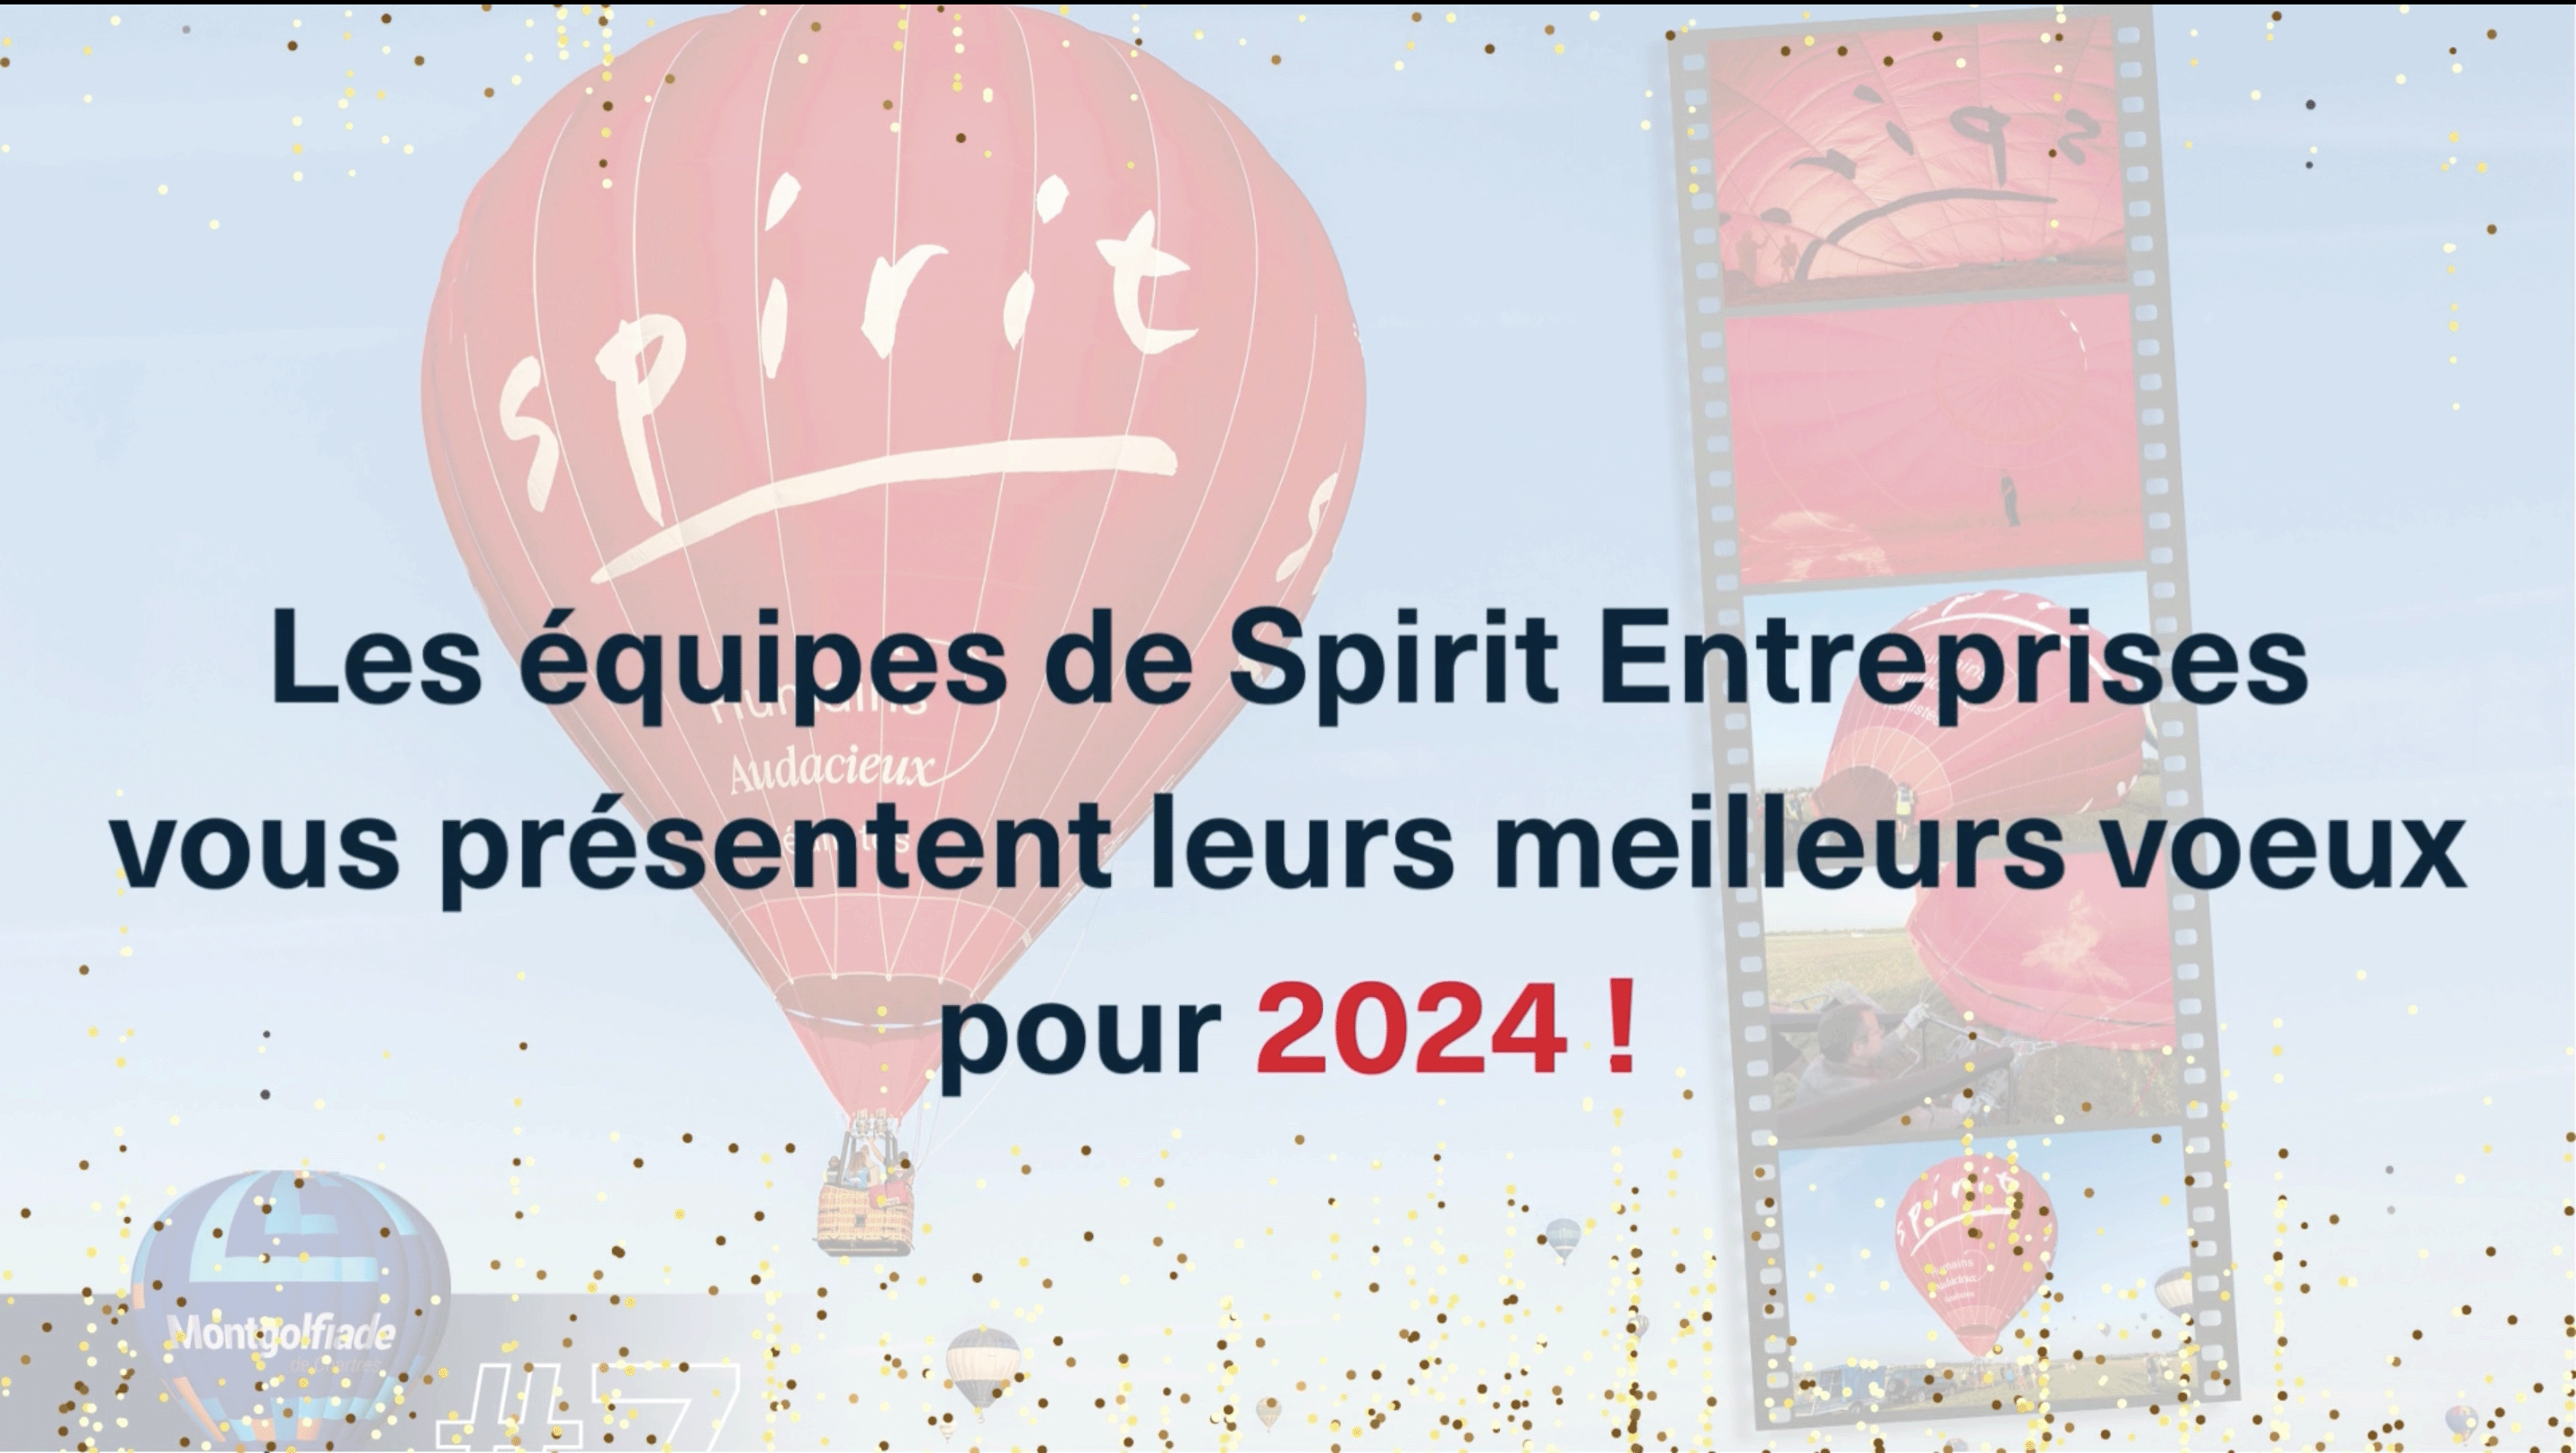 Spirit Entreprises vous souhaite une belle année 2024 !